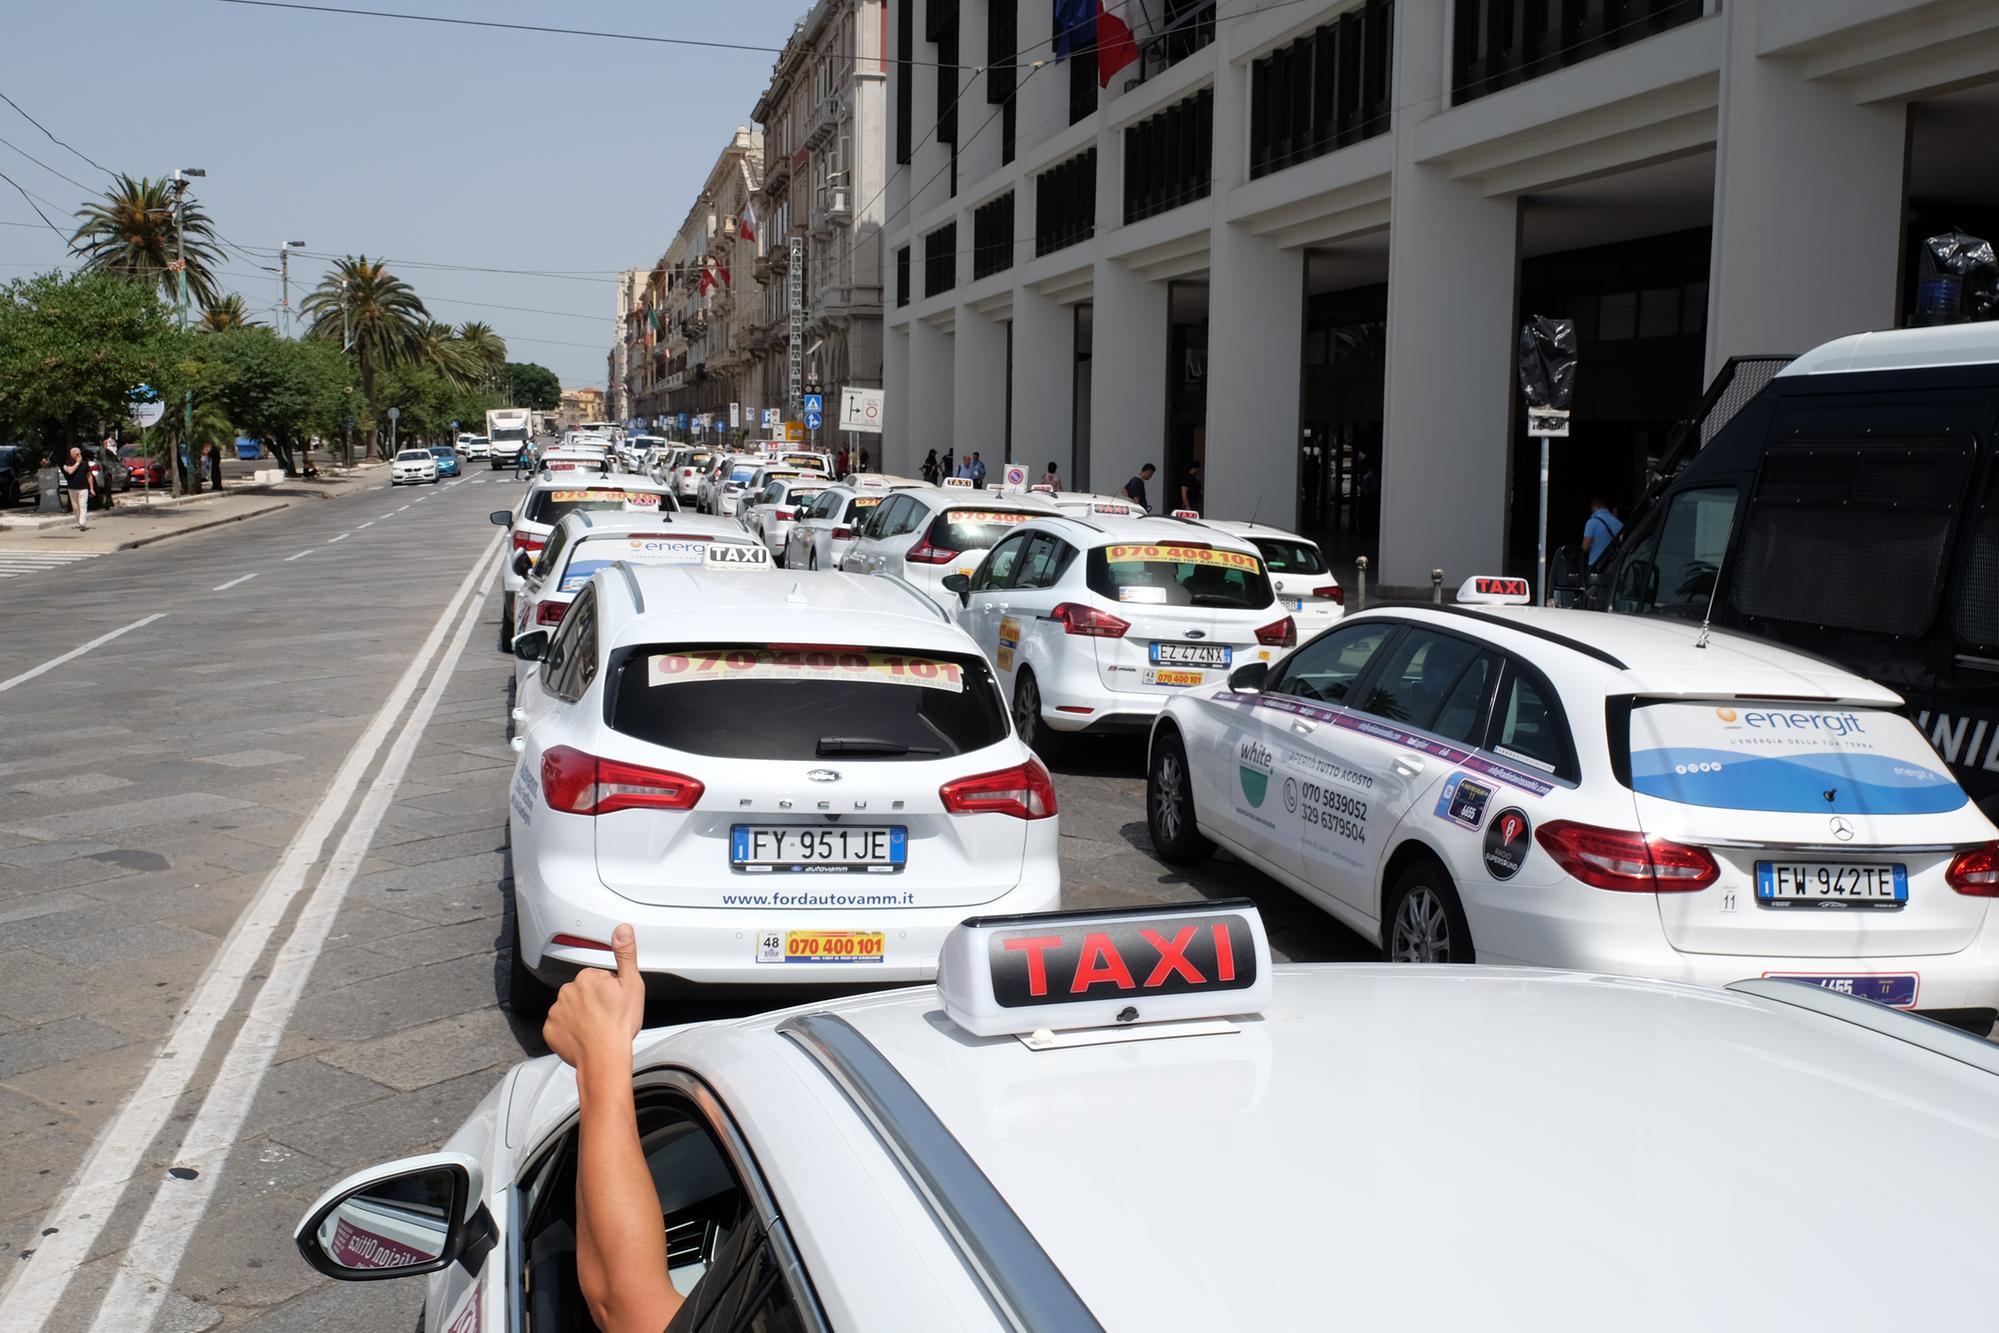 Centro città paralizzato, lo sciopero dei tassisti manda in tilt il traffico a Cagliari